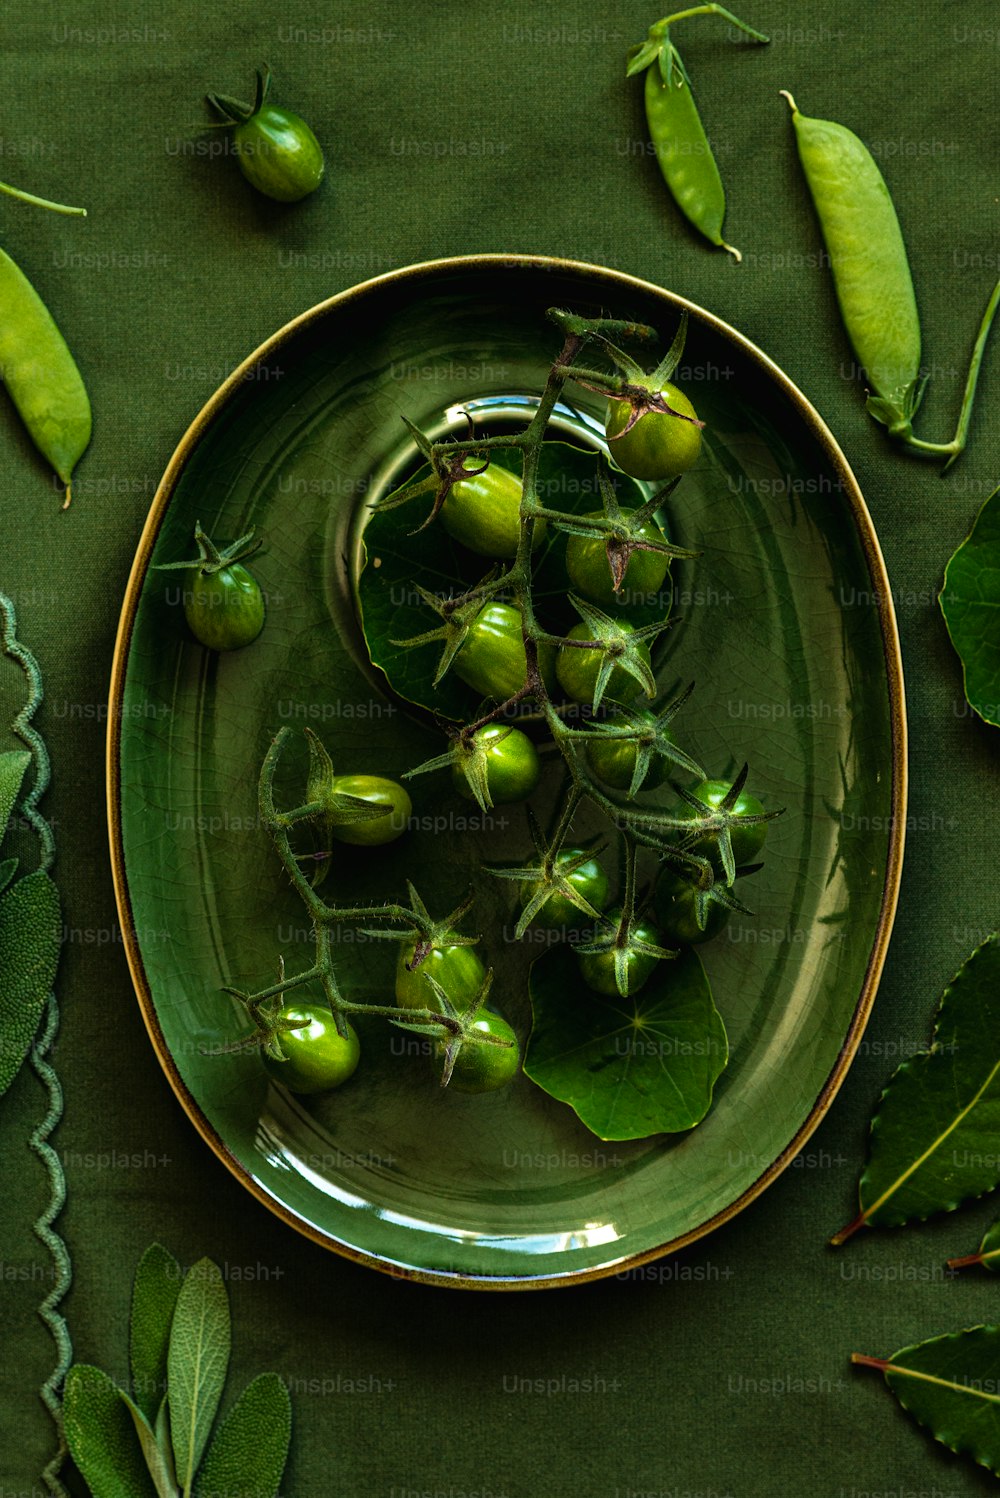 un piatto di verdure verdi su una tovaglia verde